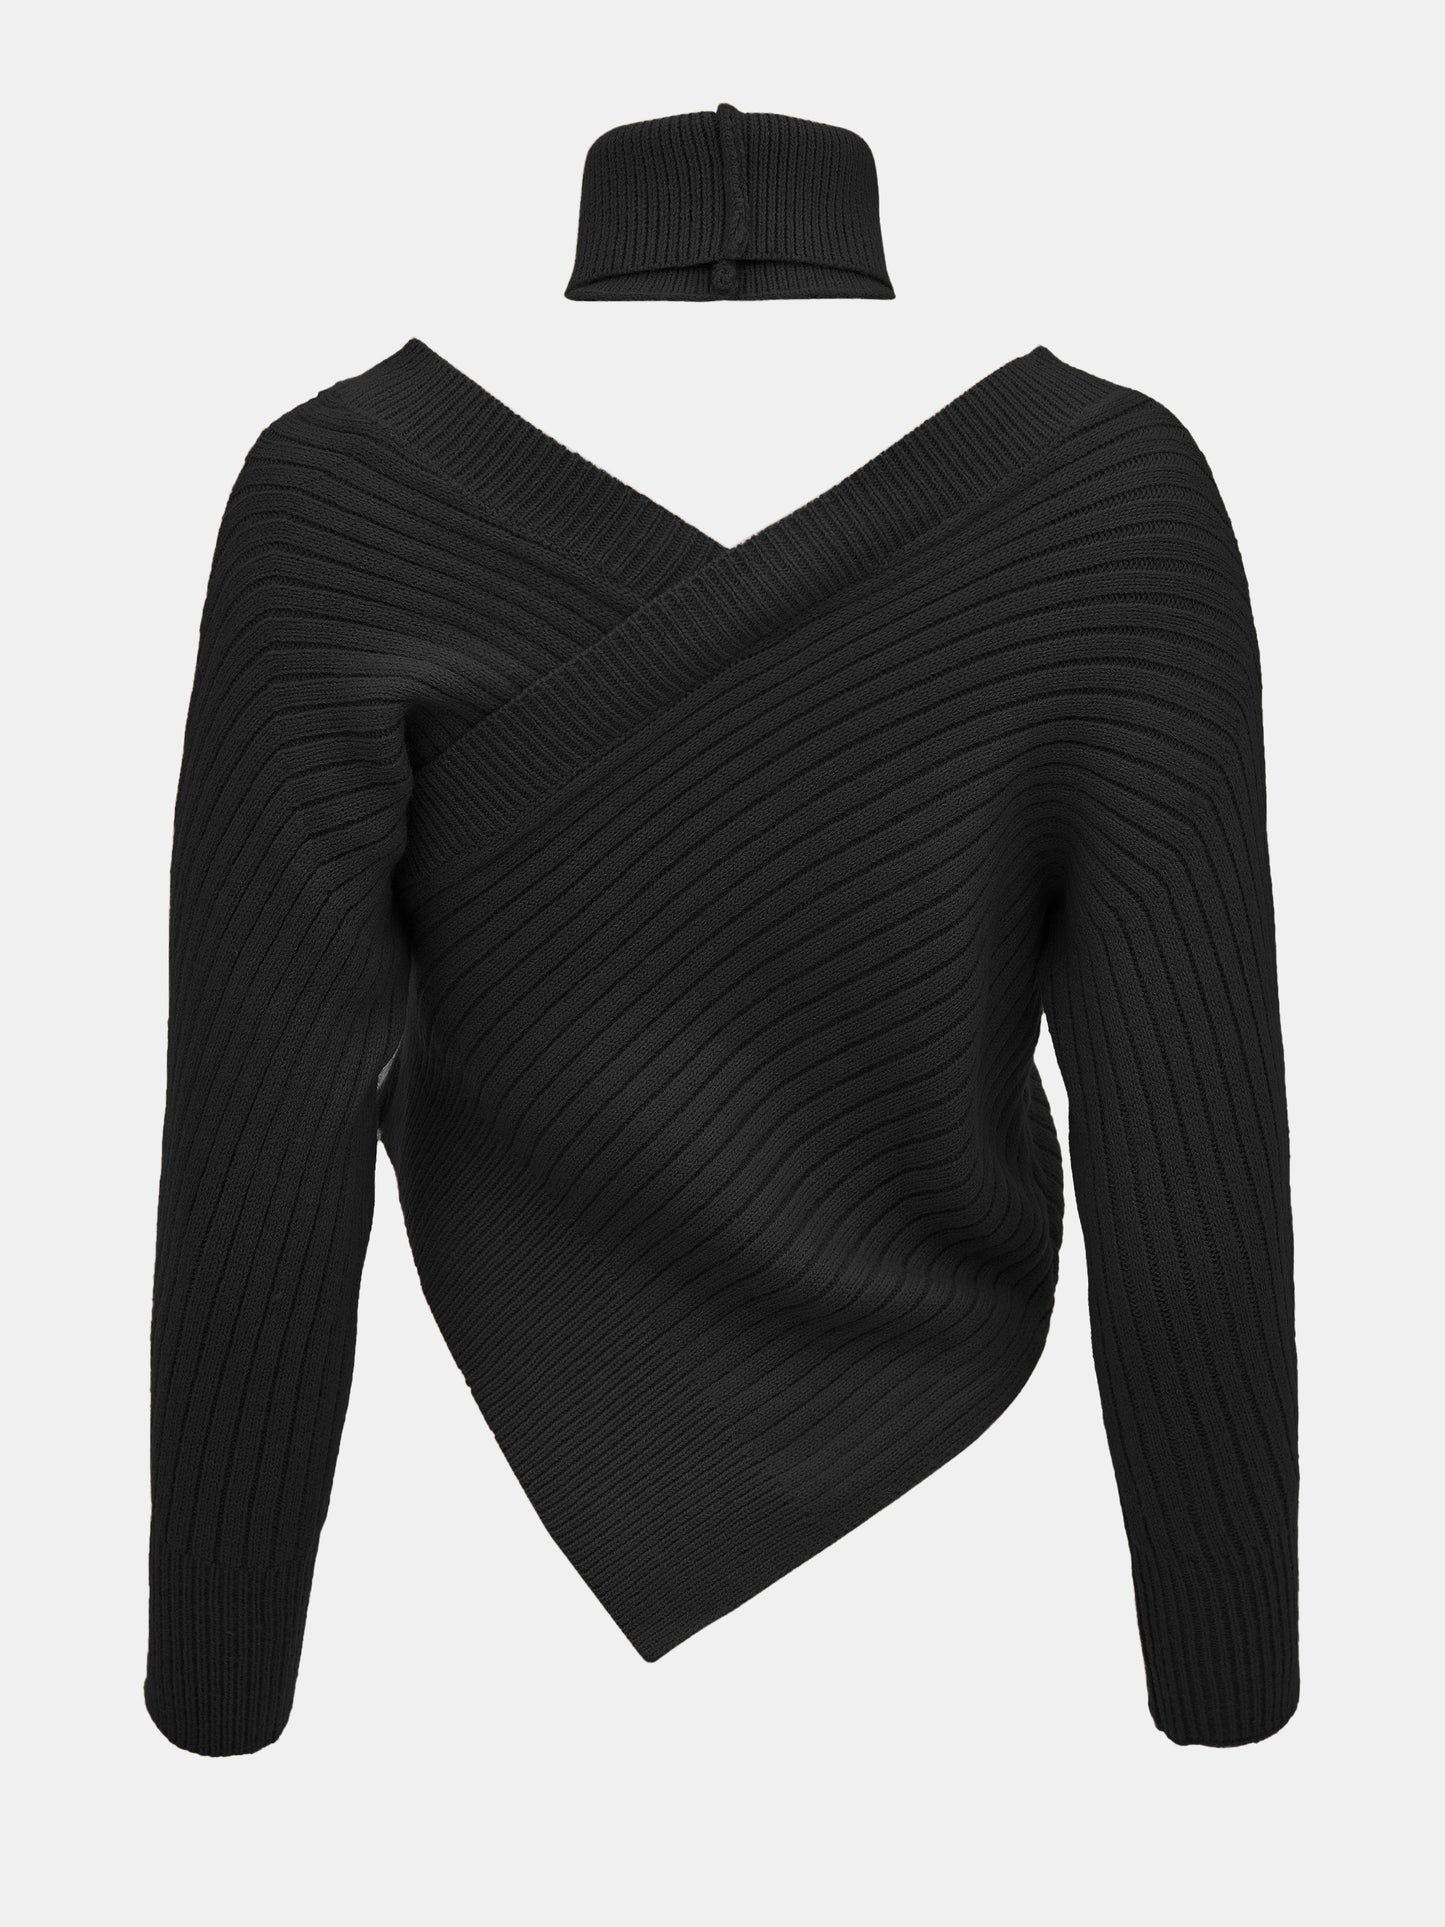 Asymmetric Neck Warmer Knit, Black